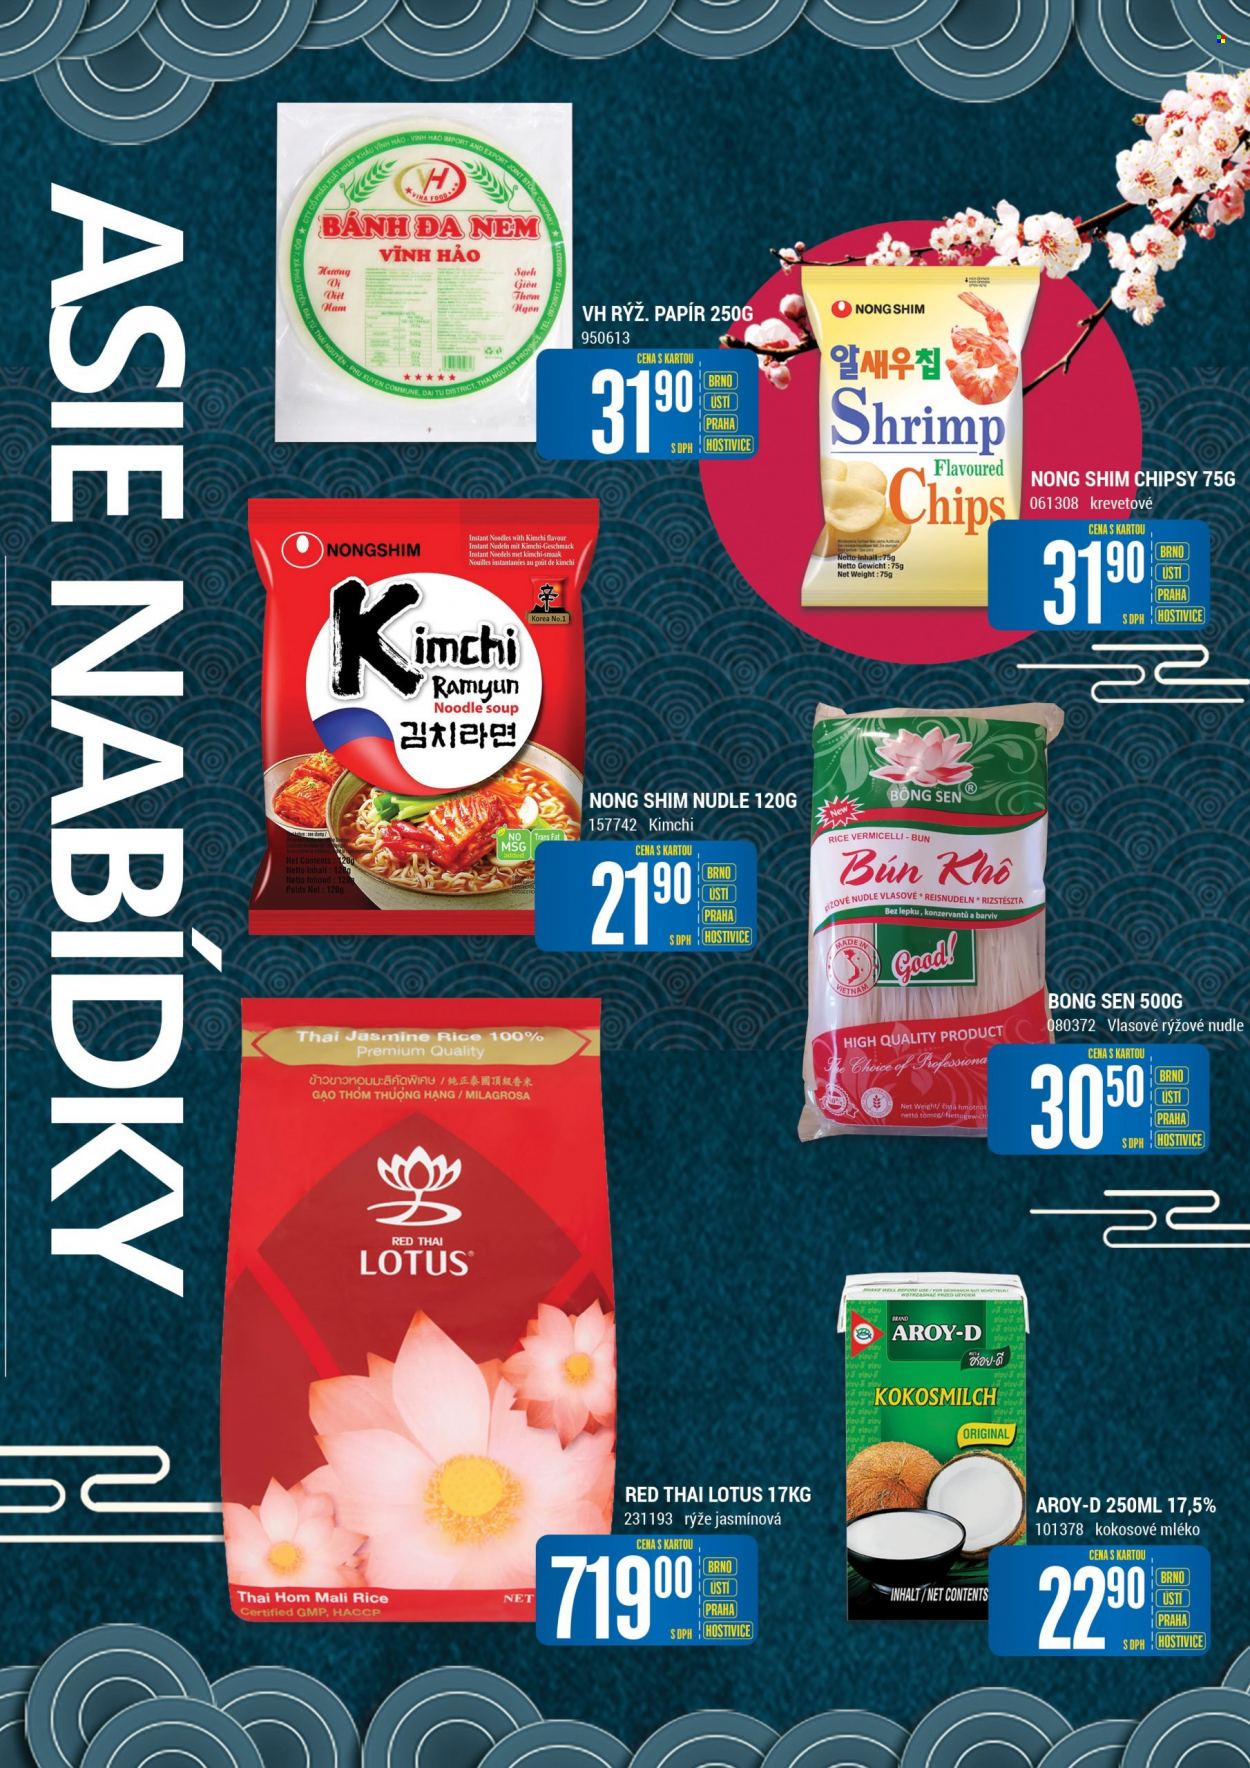 thumbnail - Leták Tamda Foods - 12.1.2022 - 18.1.2022 - Produkty v akci - kimchi, Lotus, brambůrky, chipsy, kokosové mléko, rýže, jasmínová rýže, nudle, rýžové nudle. Strana 6.